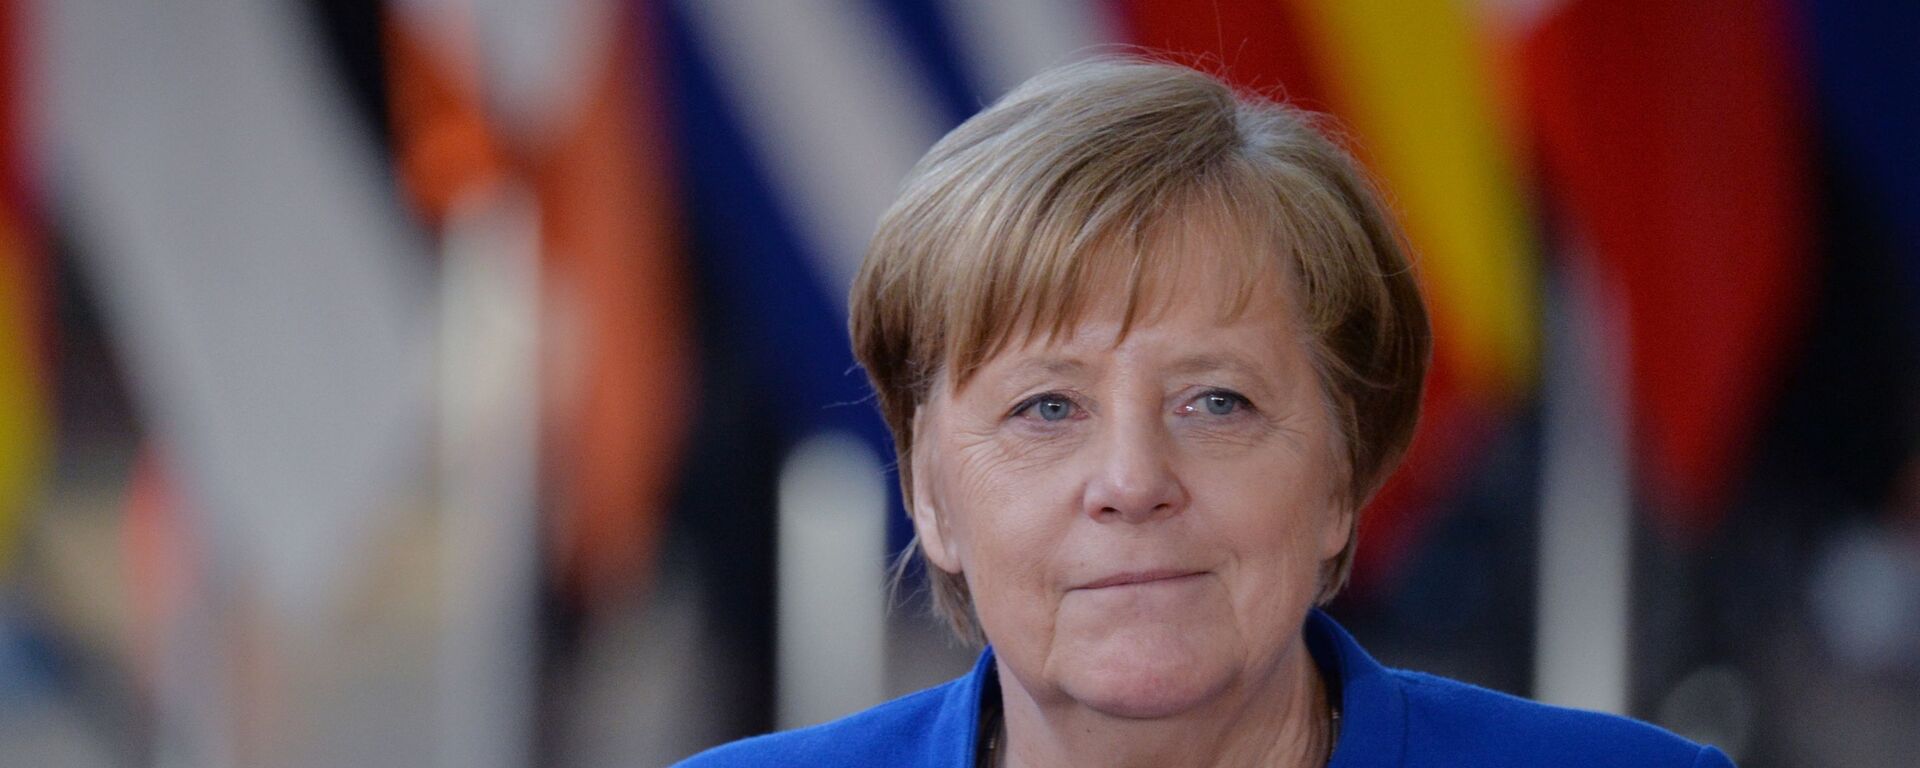 Федеральный канцлер Германии Ангела Меркель - Sputnik Таджикистан, 1920, 21.01.2021